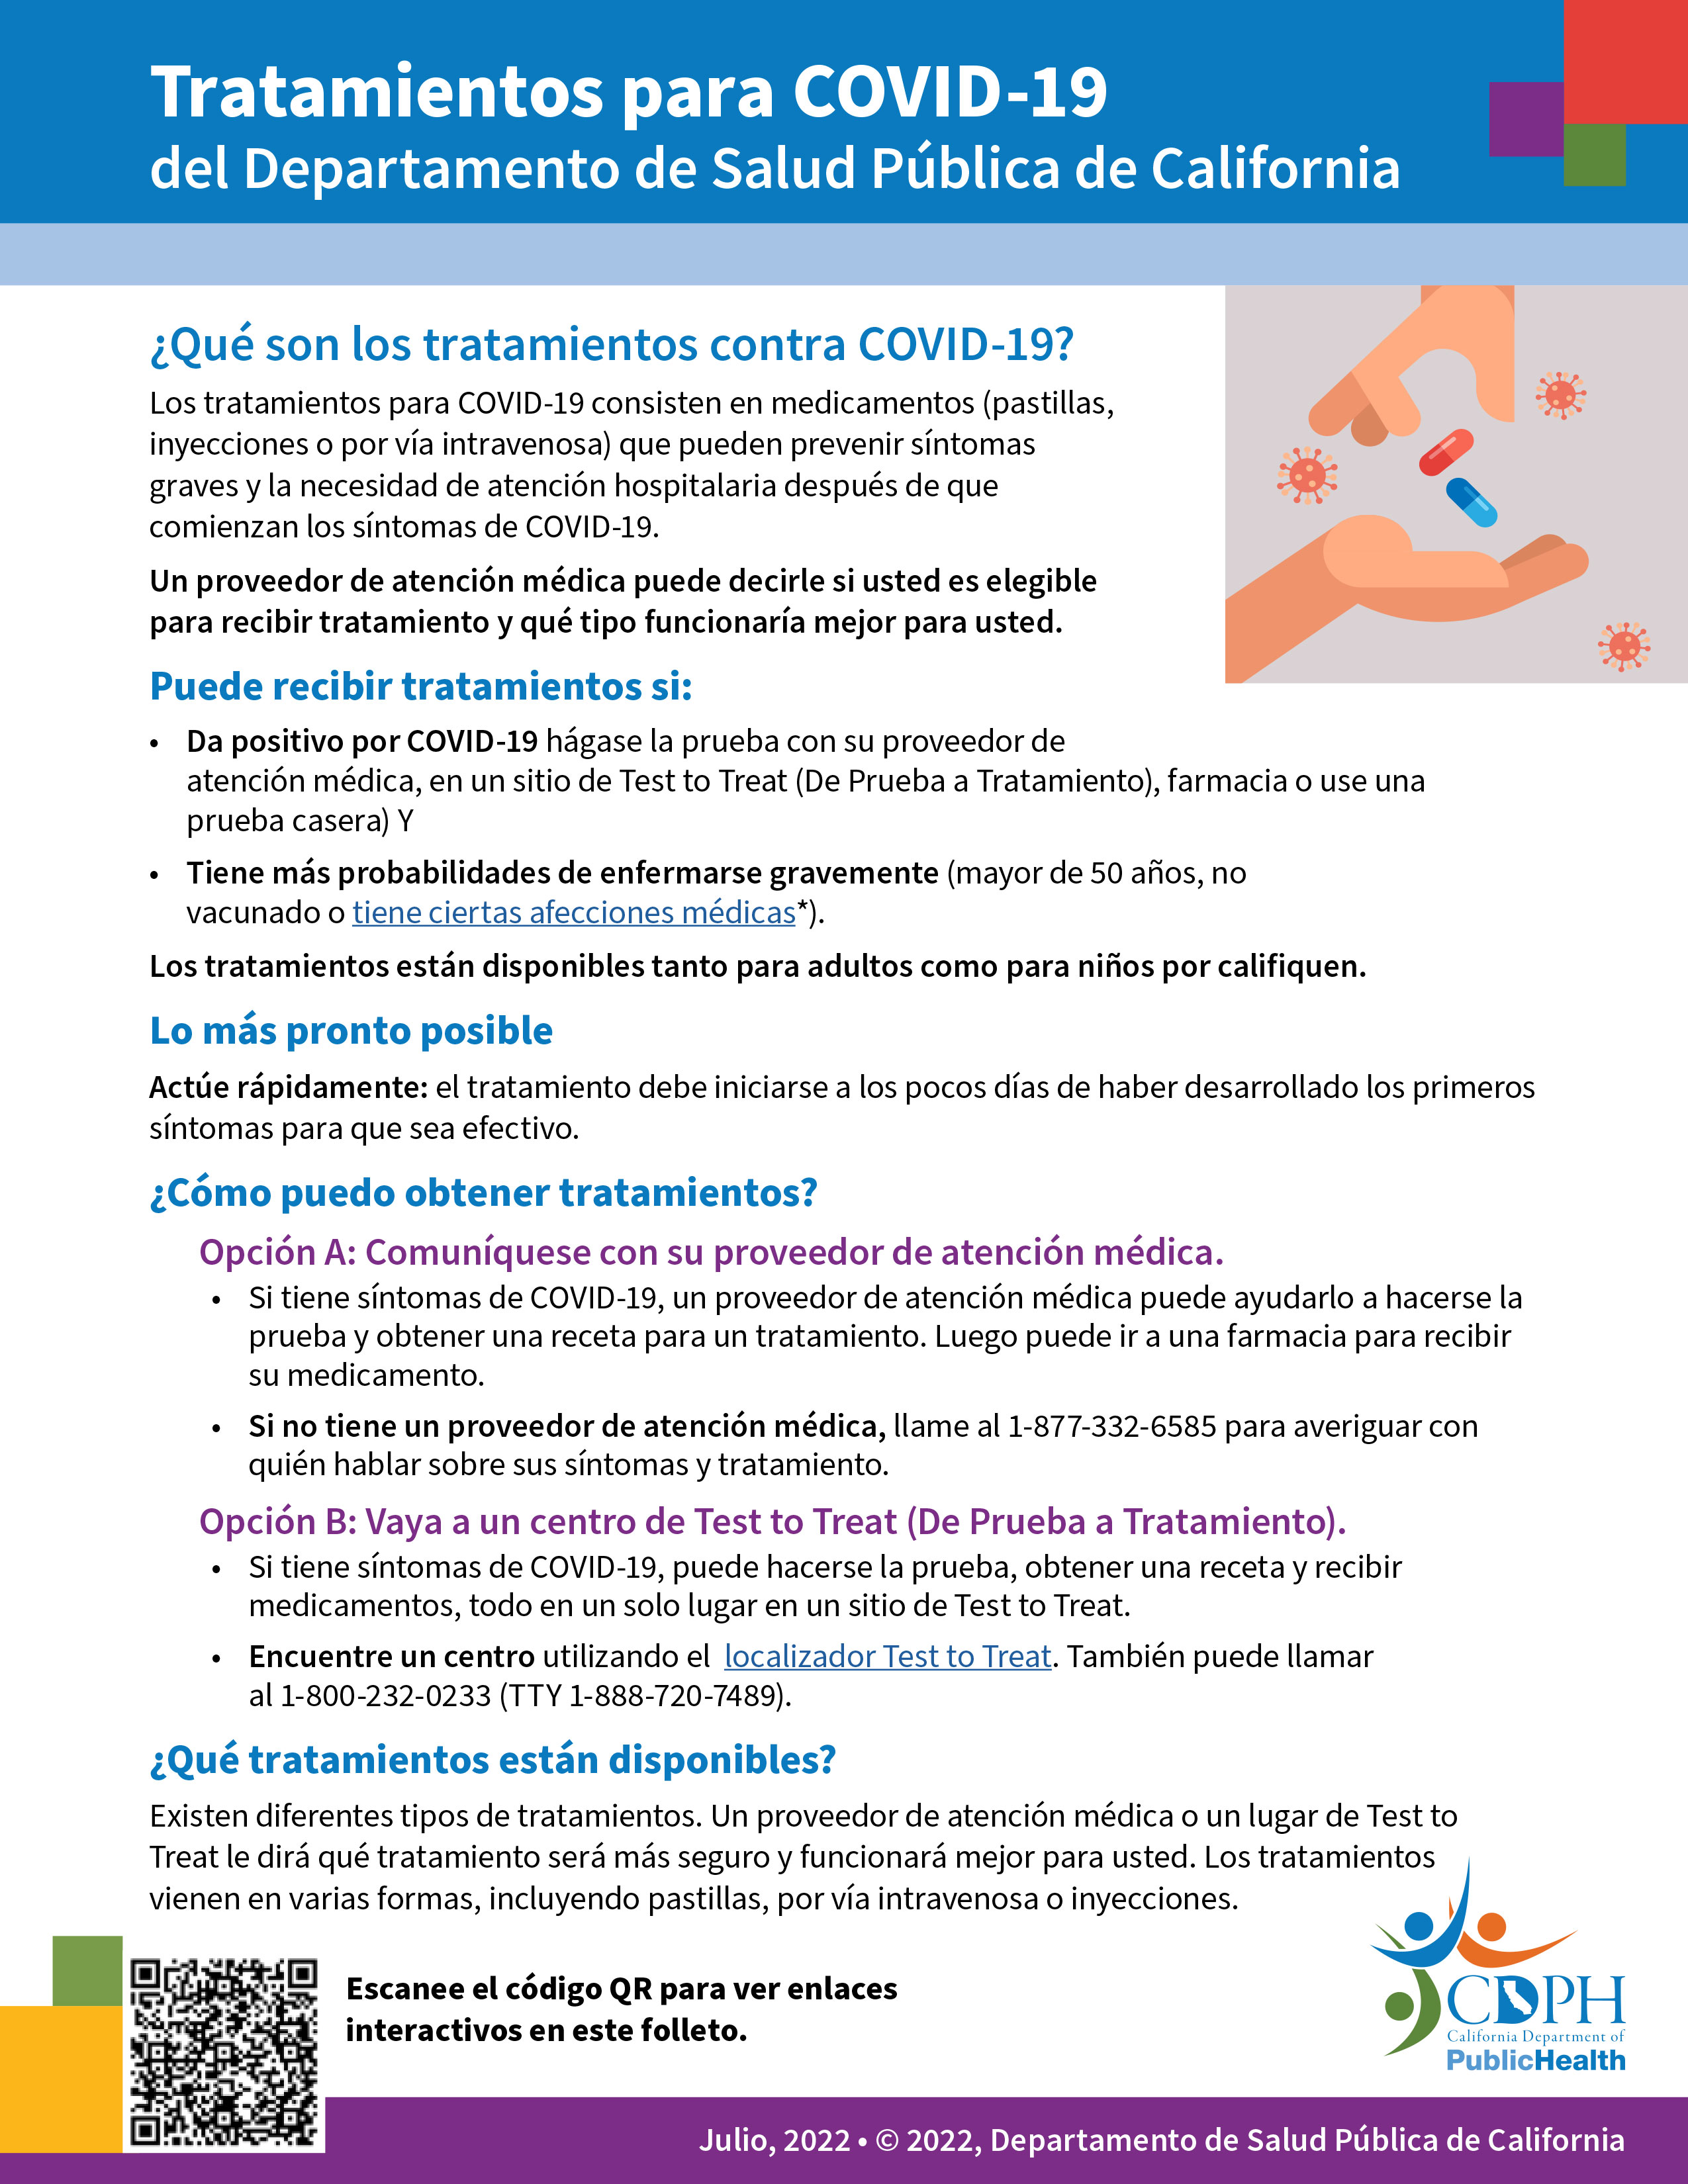 CDPH COVID-19 Treatments